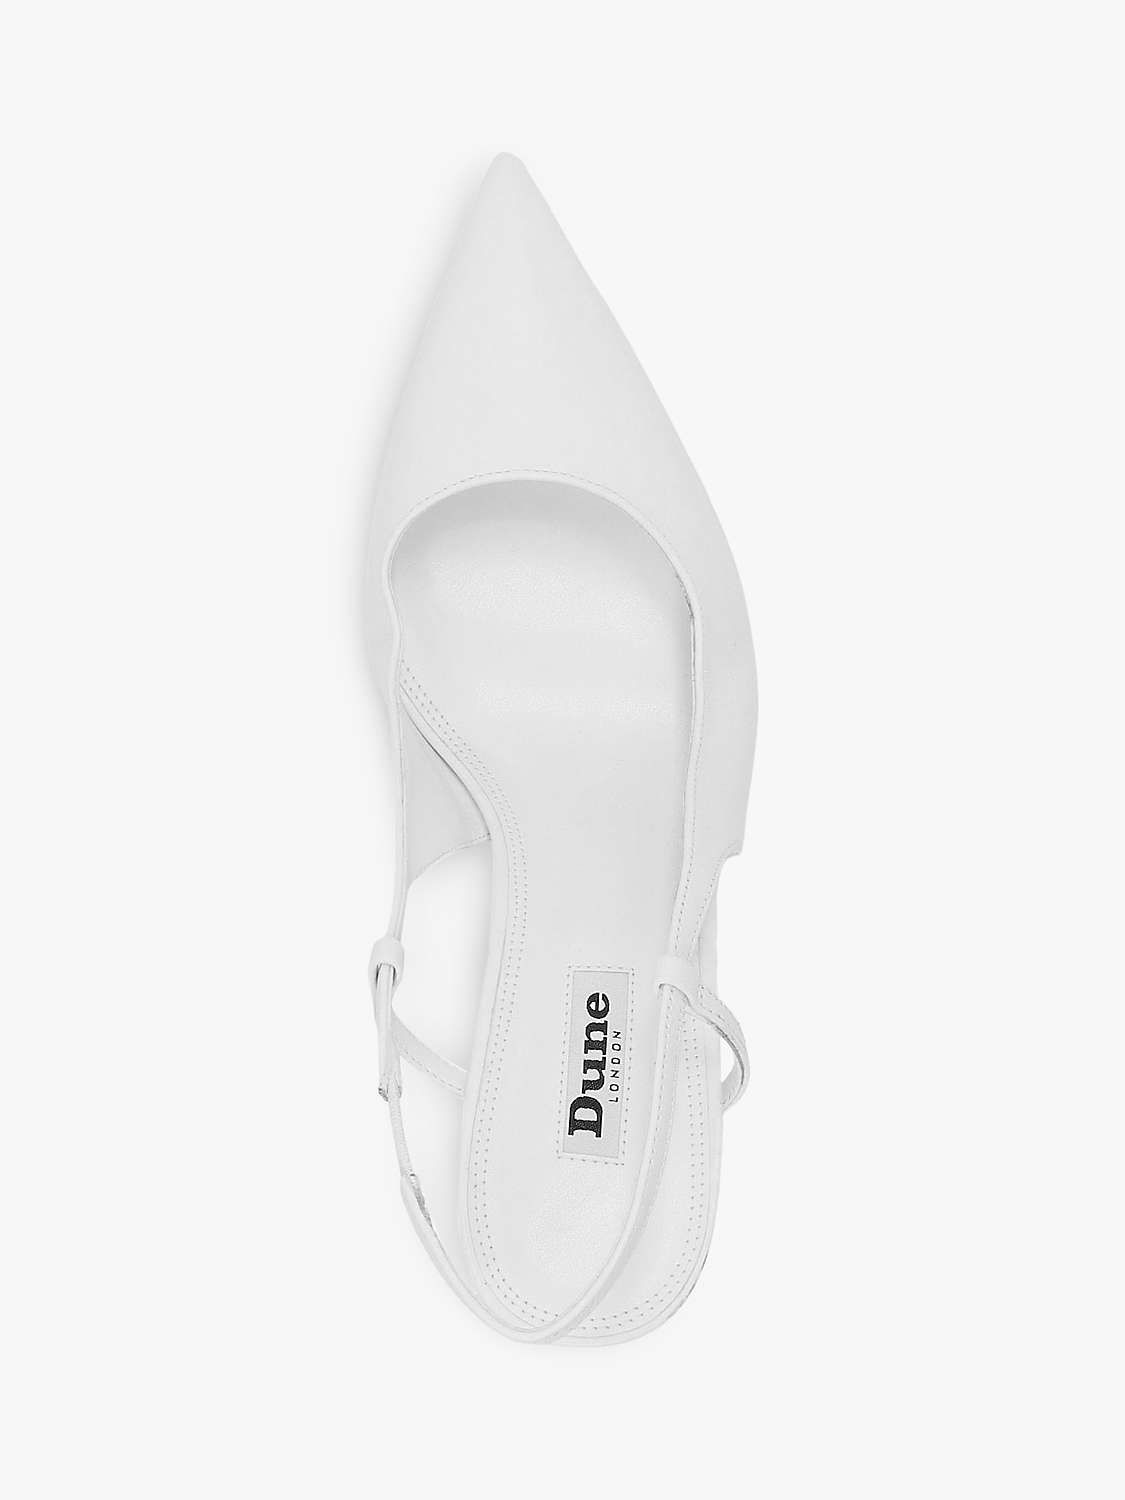 Dune Cabanna Leather Pointed Toe Slingback Shoes, White | John Lewis (UK)